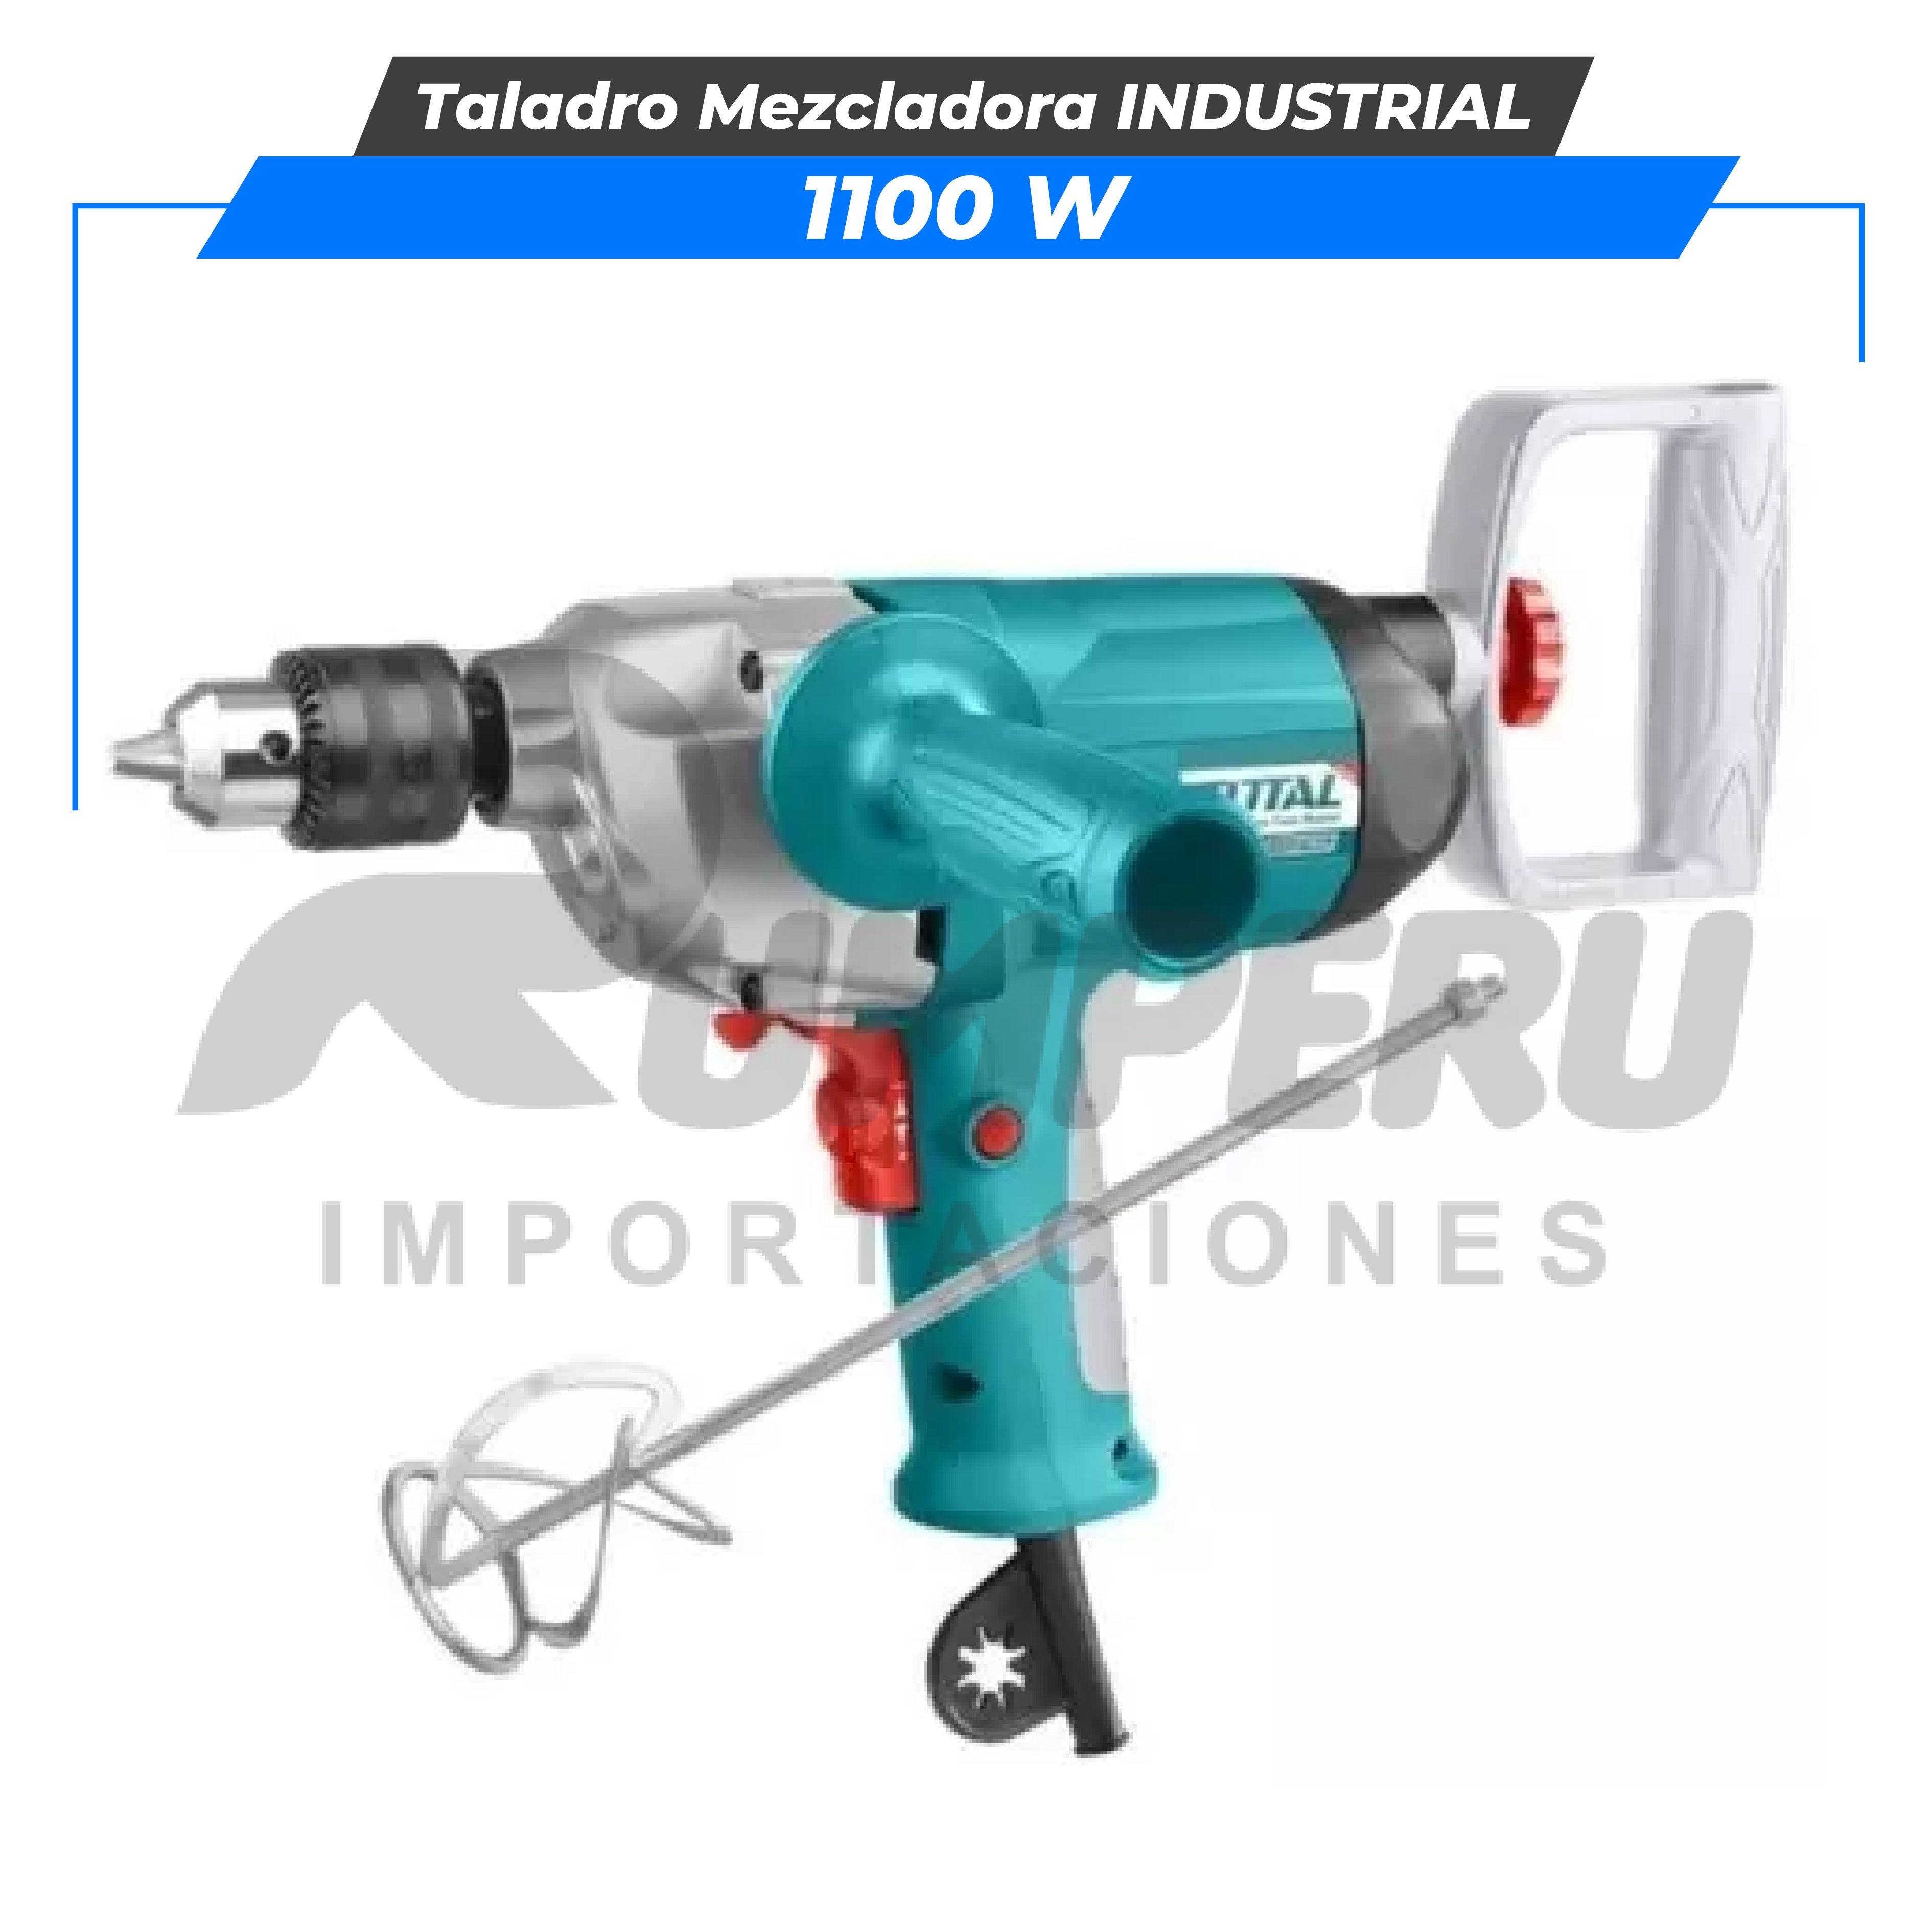 Taladro Mezcladora 1100w INDUSTRIAL